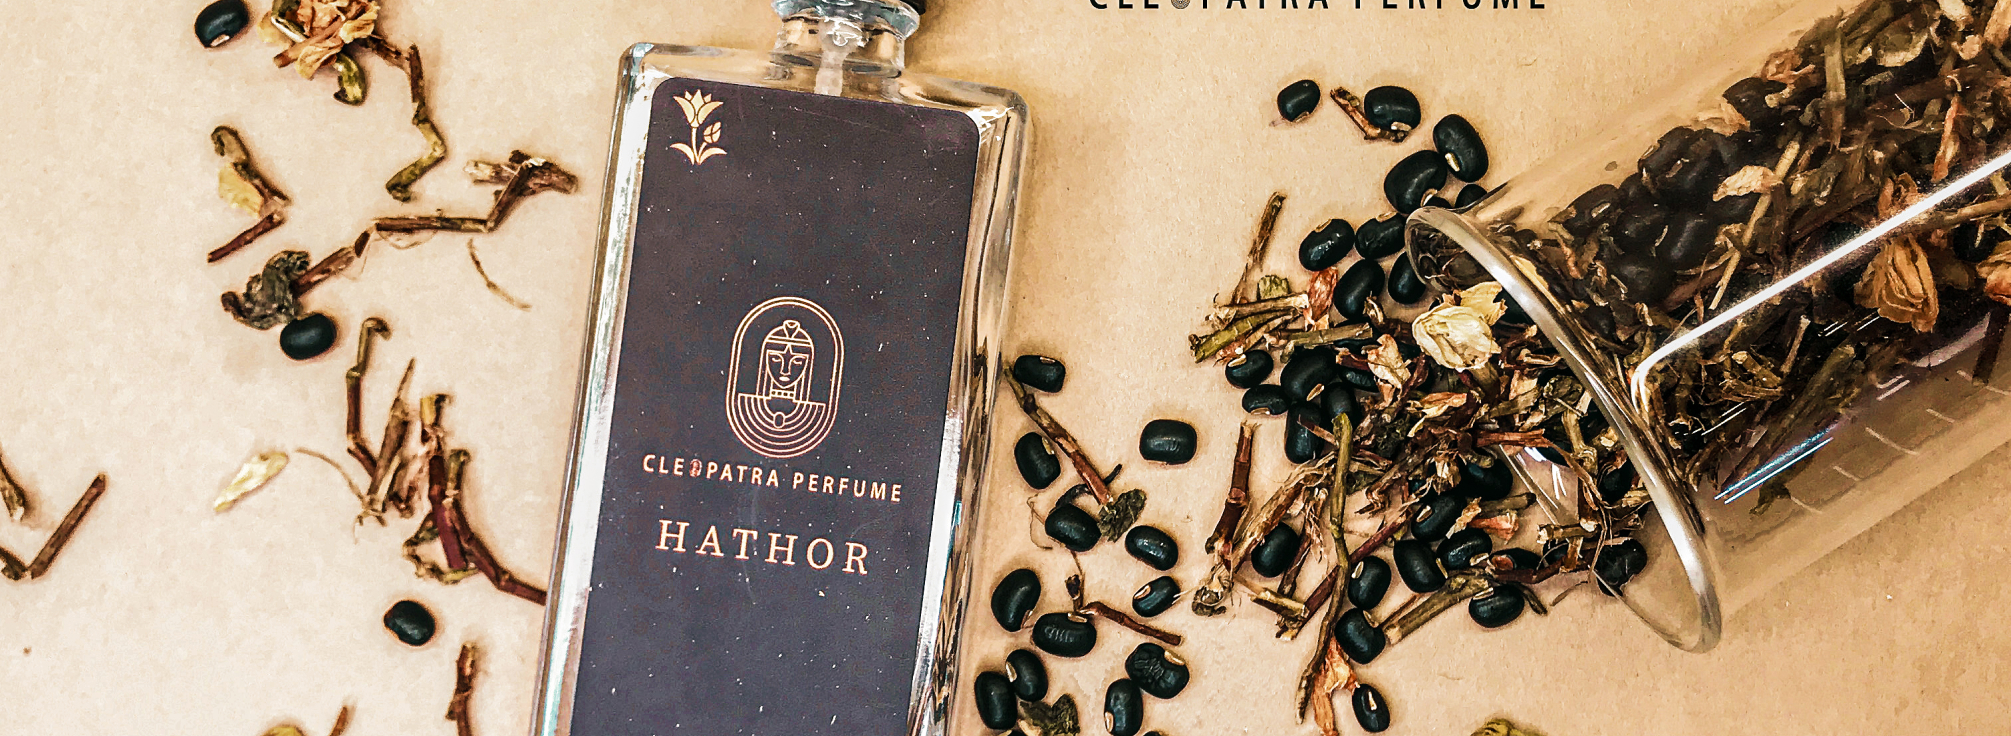 cleopatra perfume